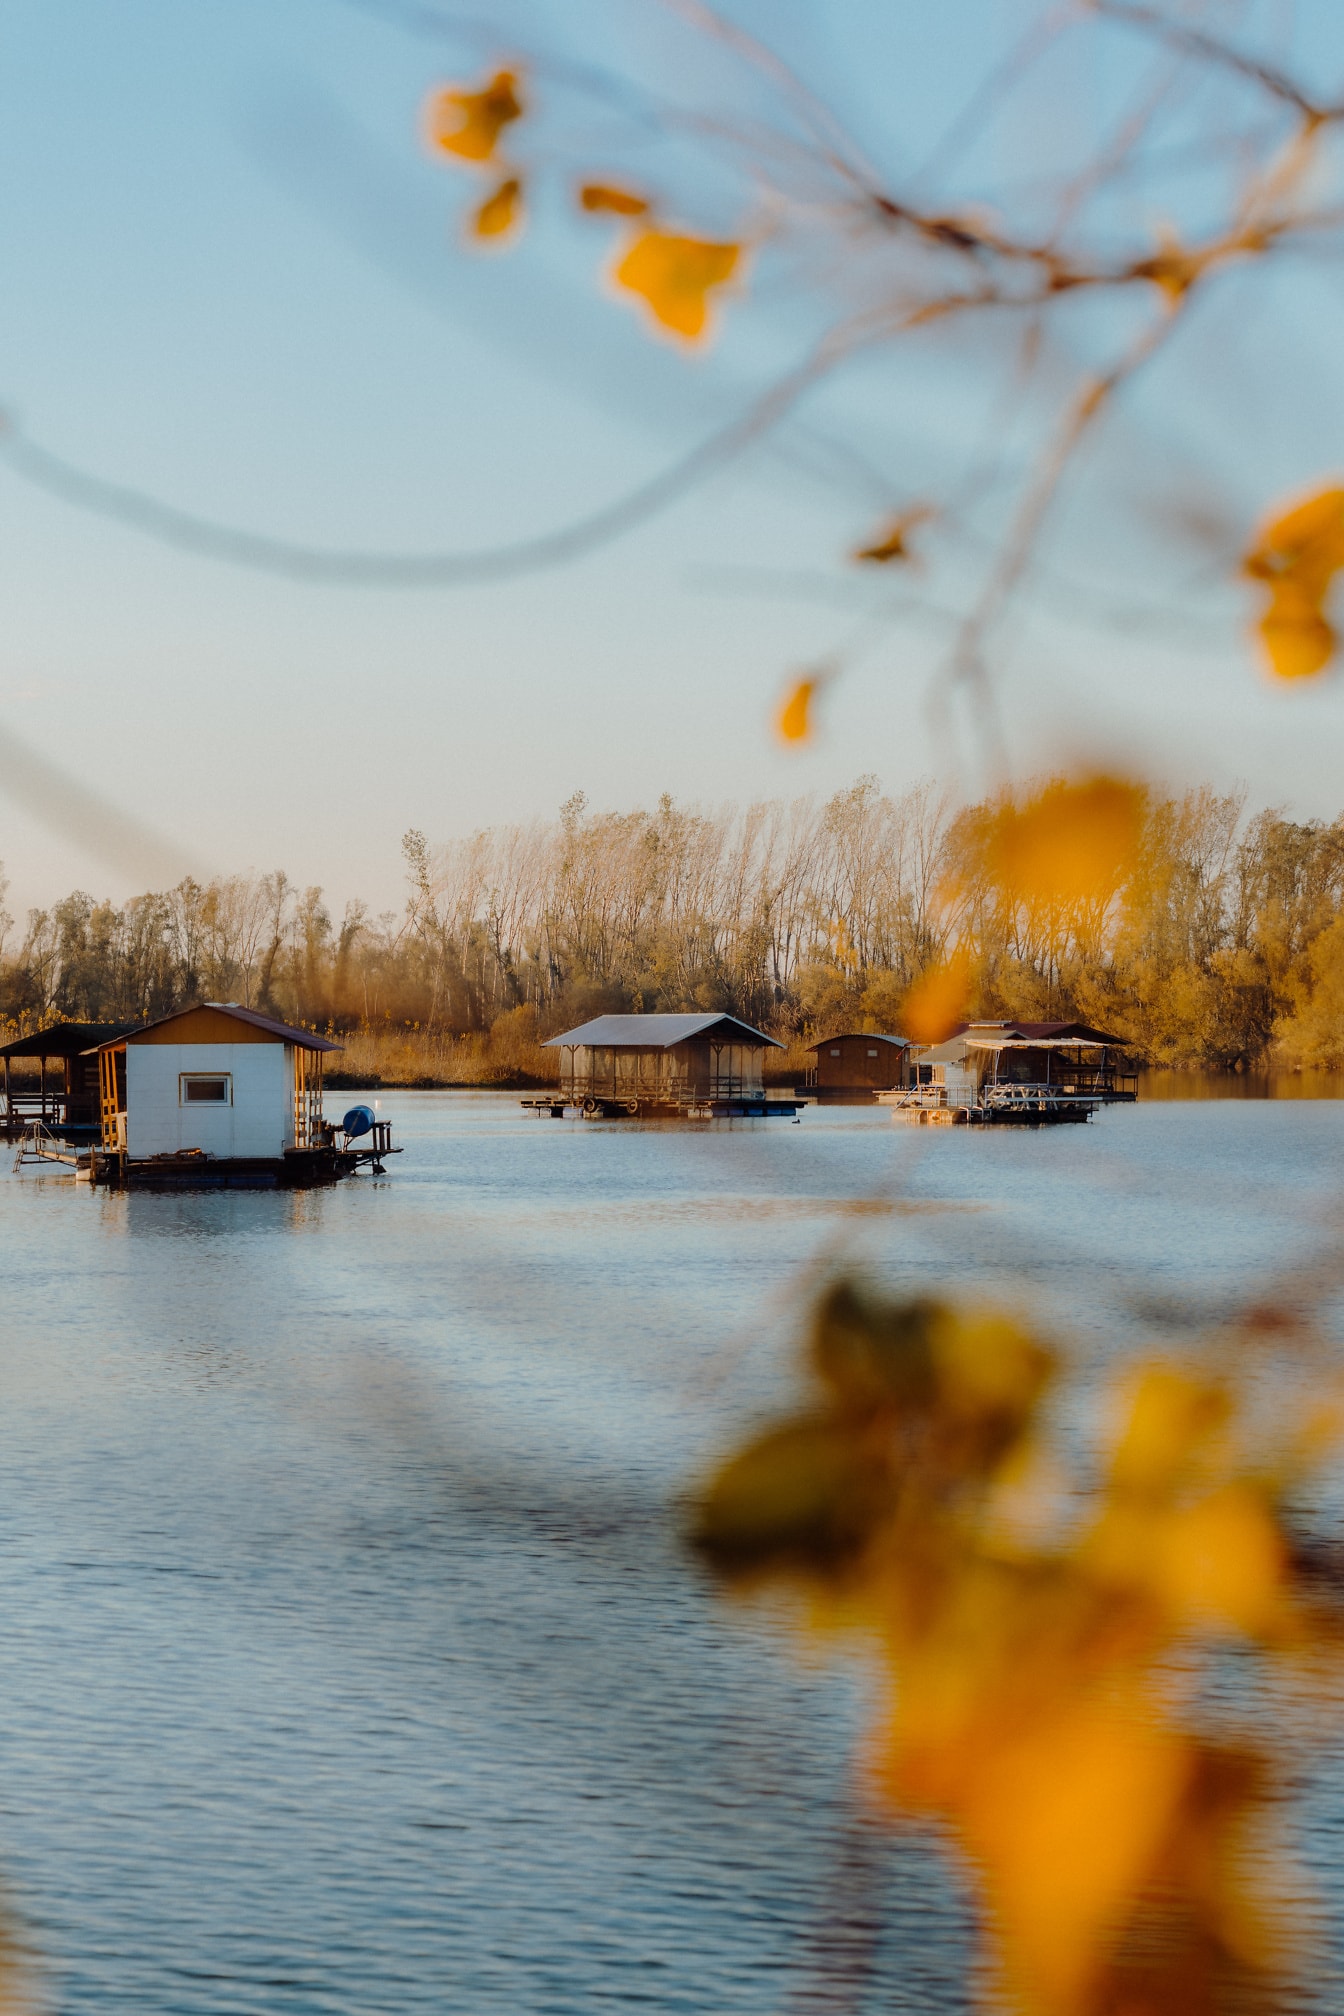 Maisons sur des radeaux flottants dans un lac Tikvara au bord du Danube